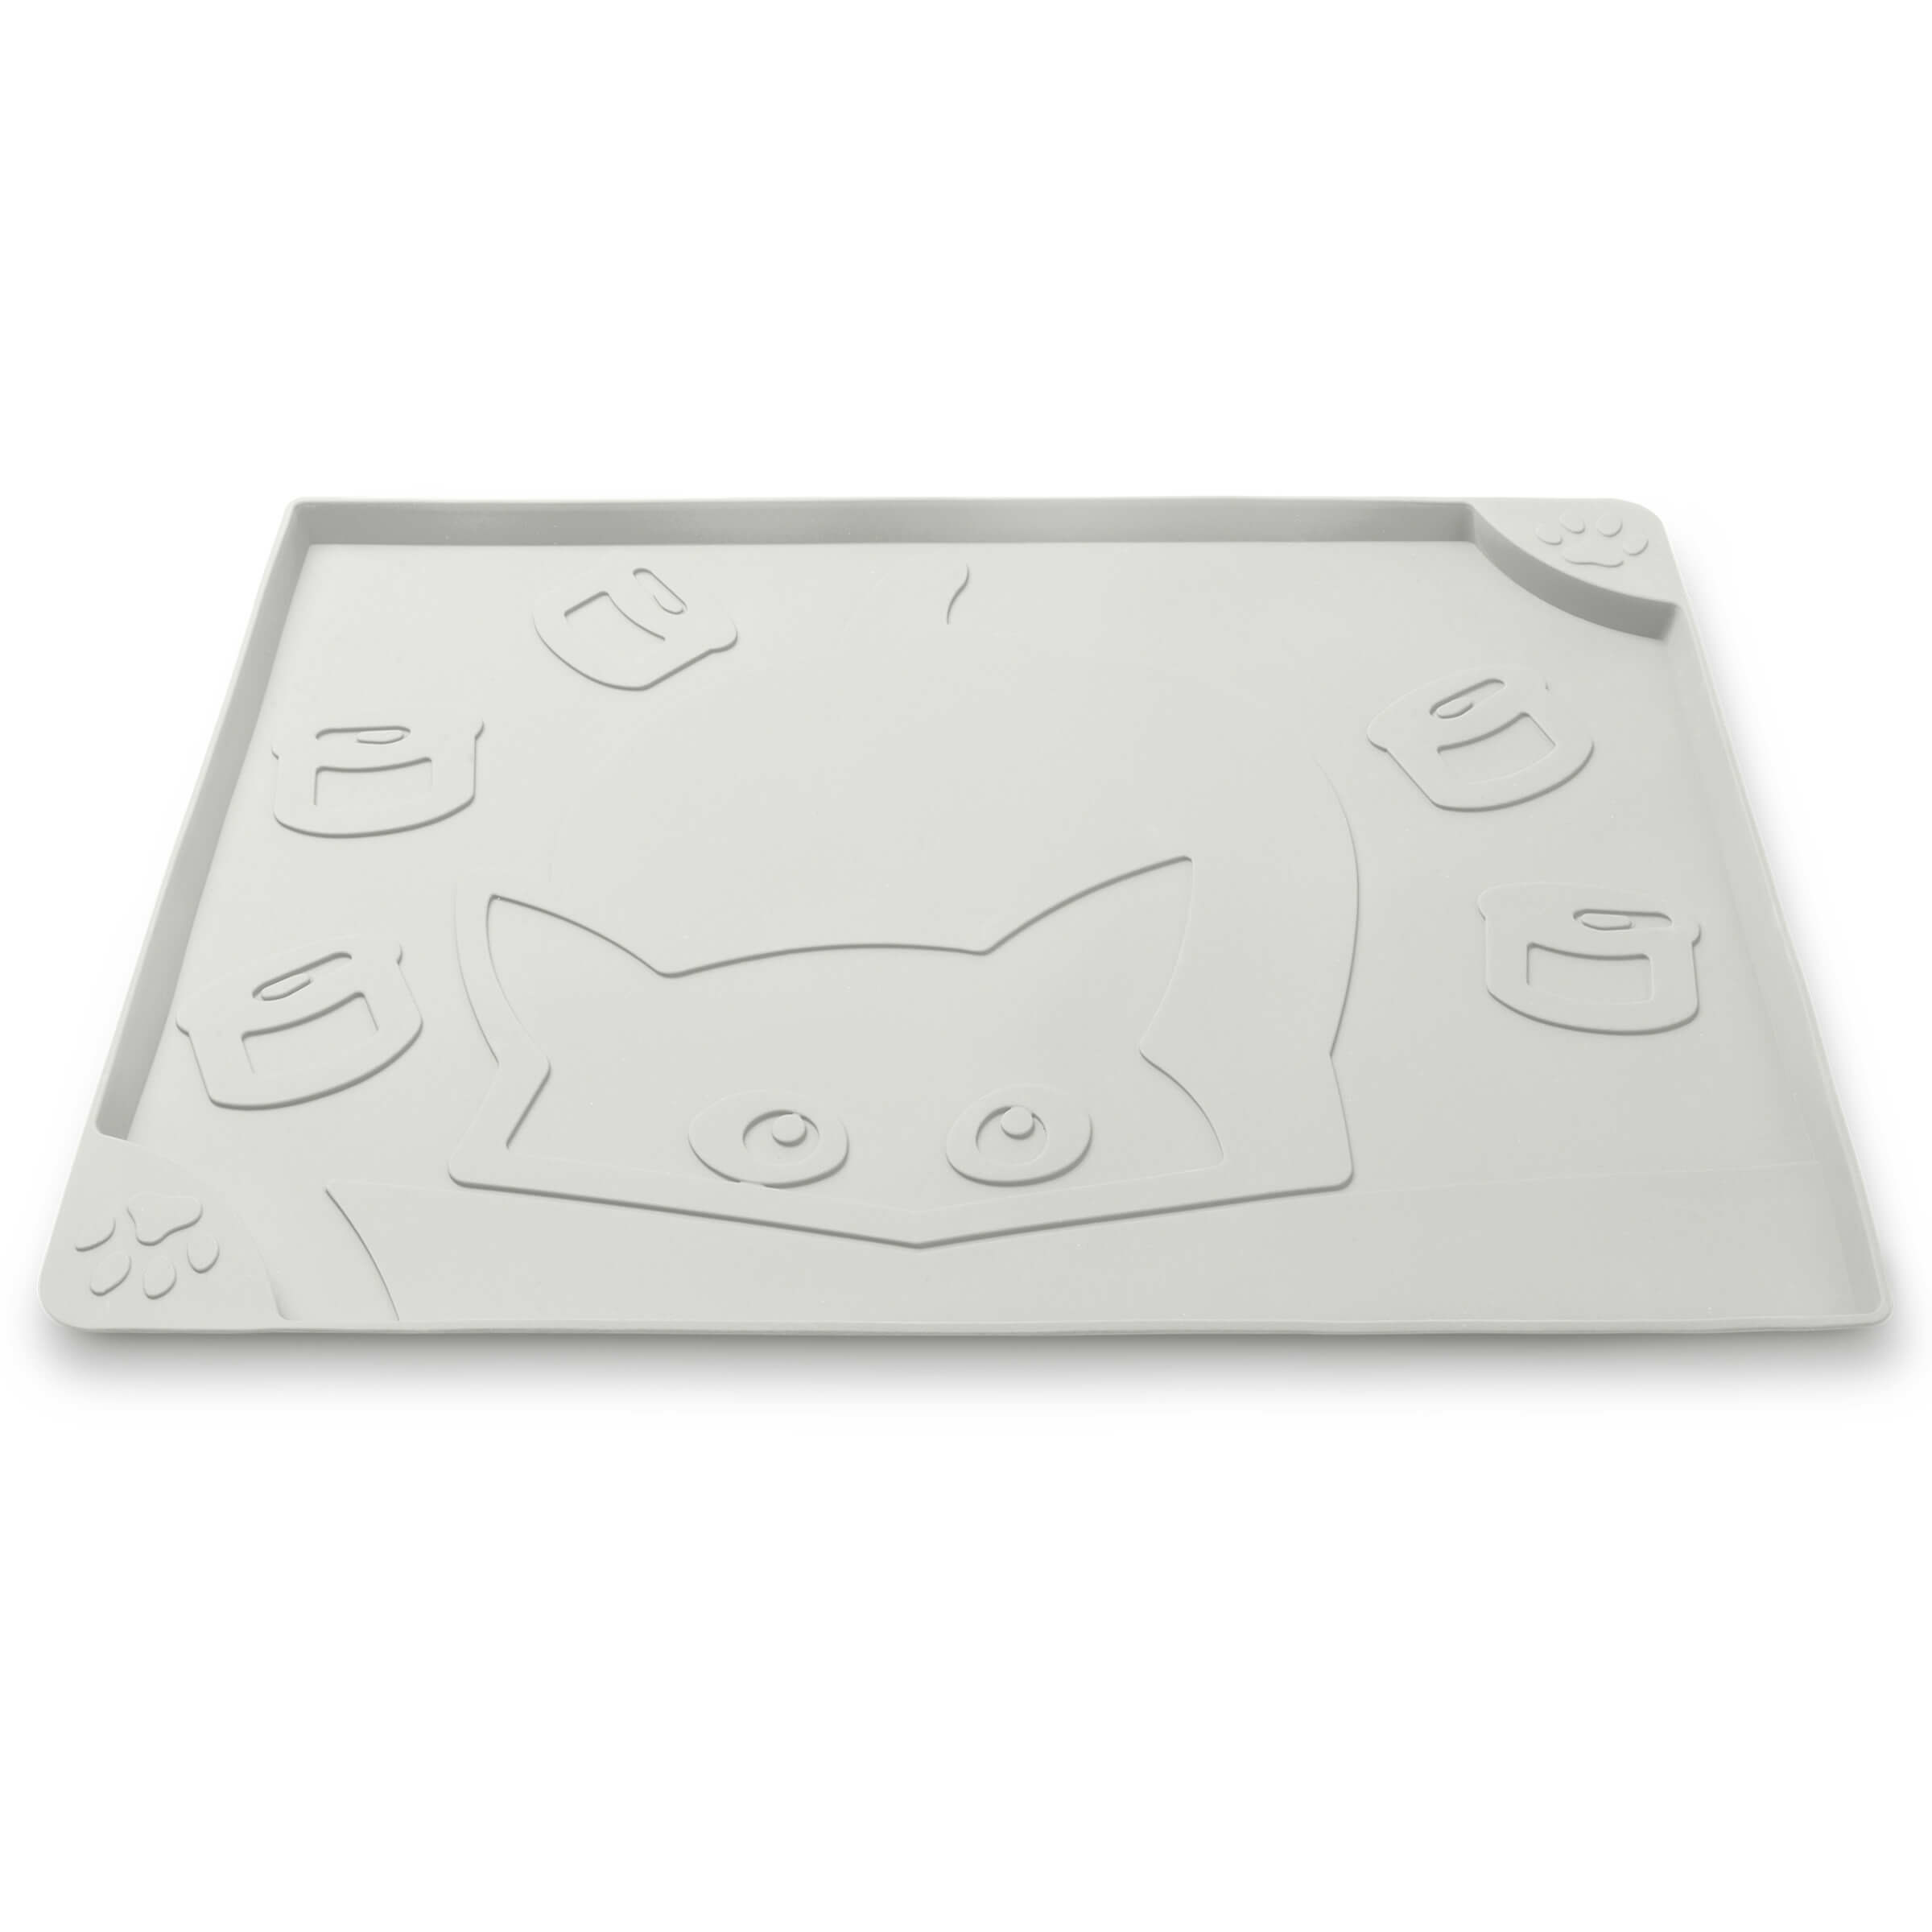 Freezack Tapis de gamelle Square Cat&Cans gris